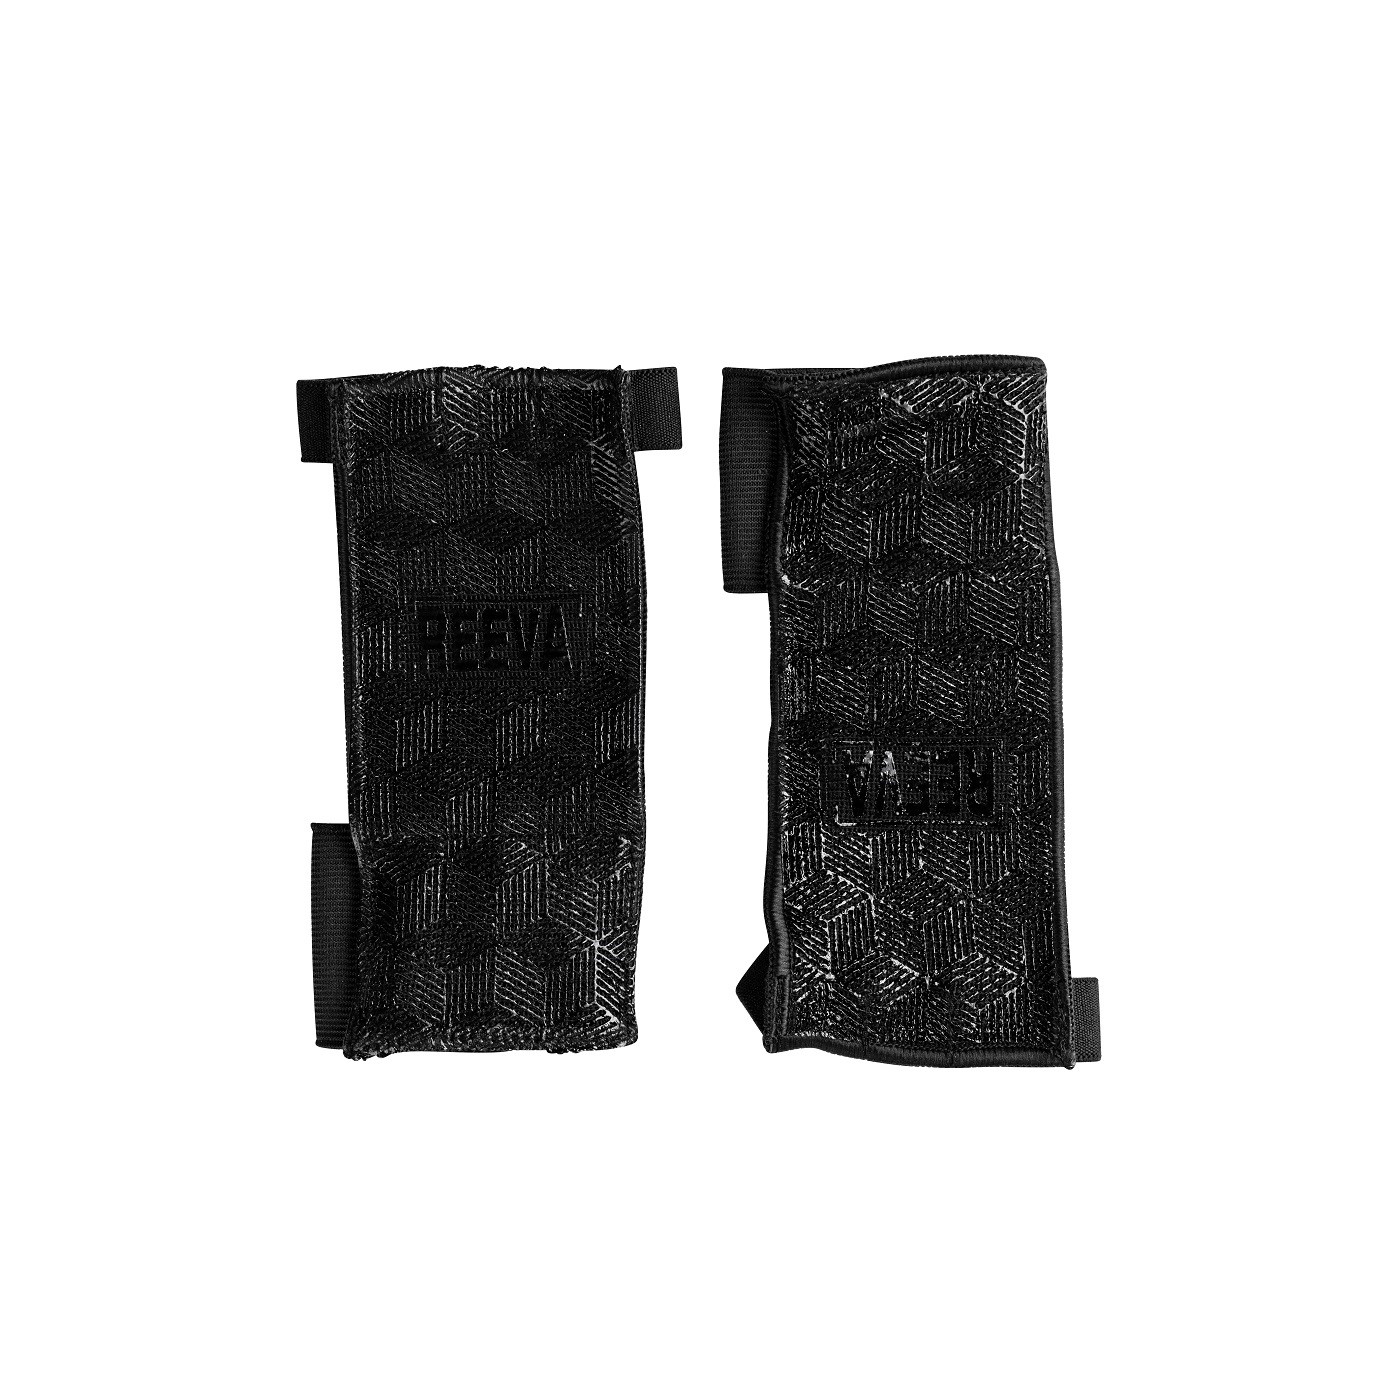 Reeva Ultra Feel Crossfit Handschoenen - XL